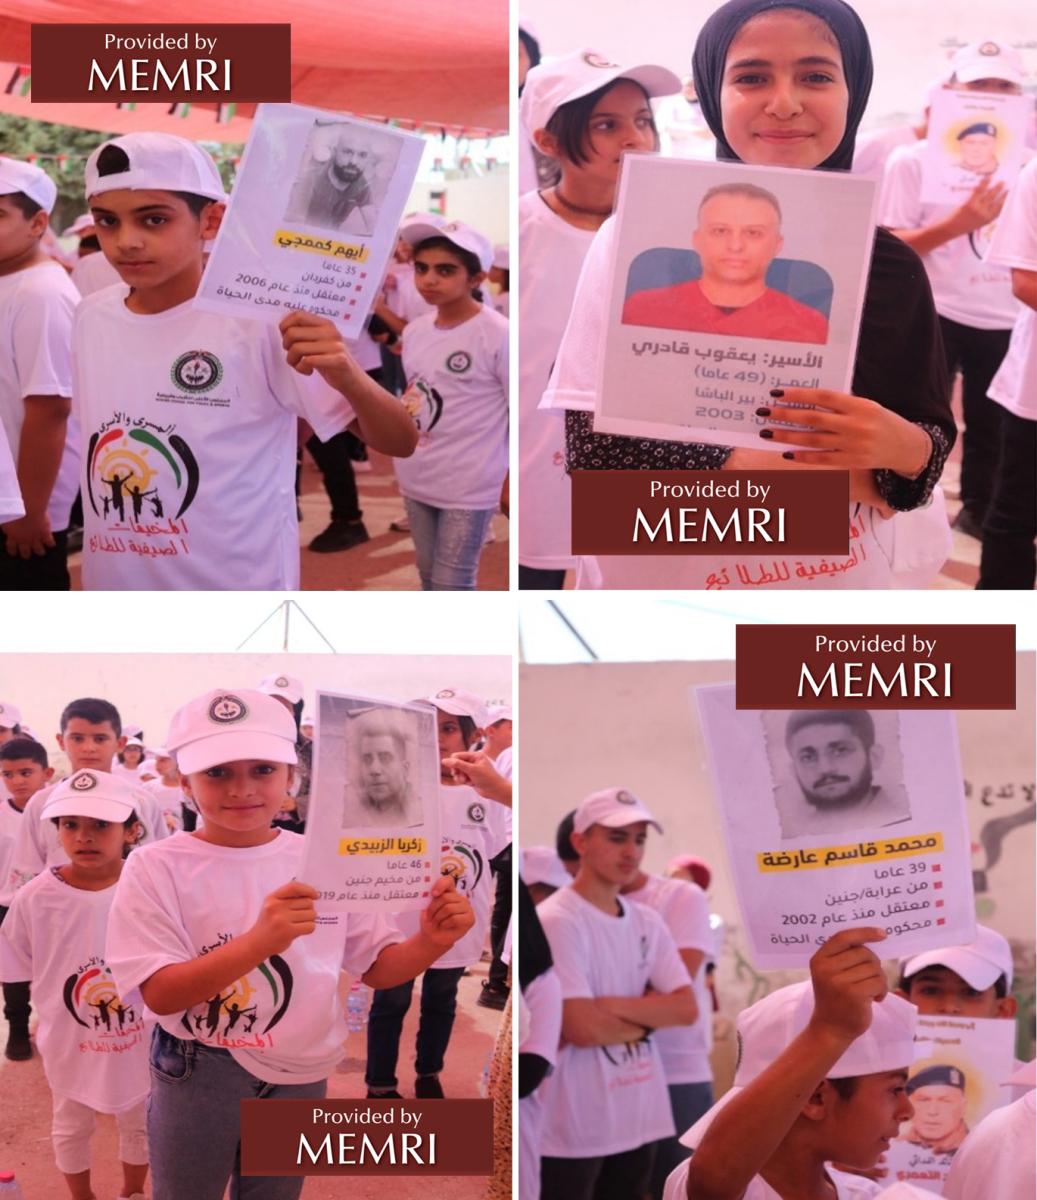 Campistas en Belén sostienen pancartas con fotografías de los prisioneros y detalles sobre estos: su edad, de dónde provienen y el año en que fueron encarcelados (Facebook.com/hcyspalestine, 18 de julio, 2022)